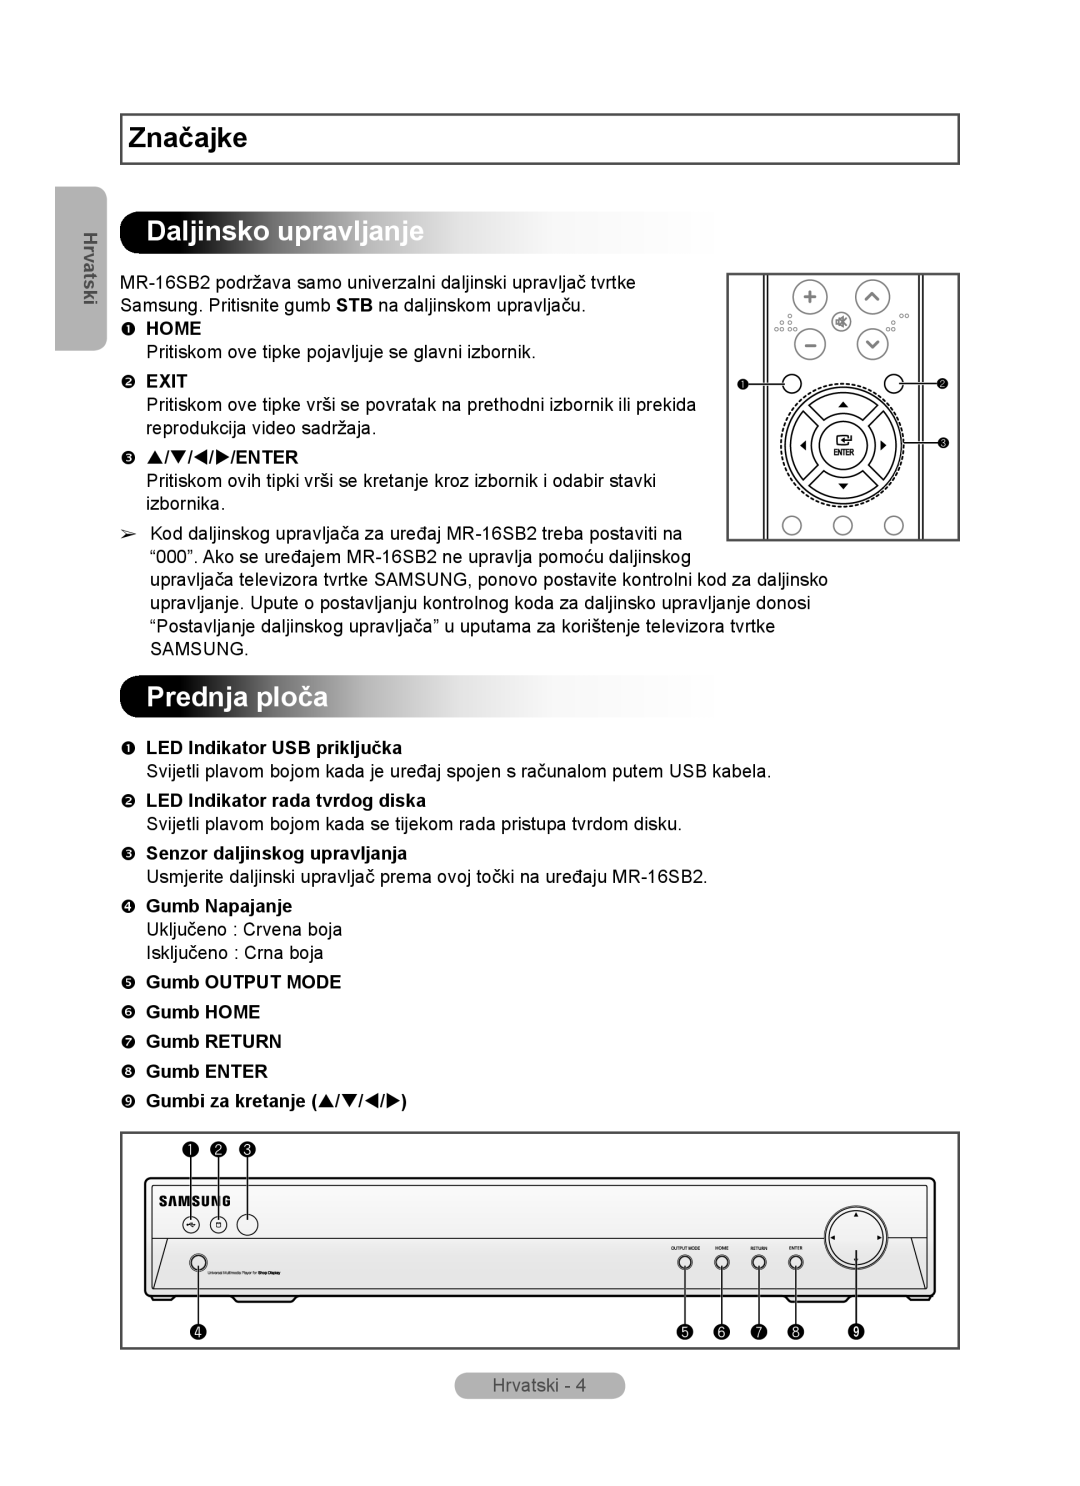 Samsung MR-16SB2 Daljinsko upravljanje, Prednja ploča,  LED Indikator USB priključka,  LED Indikator rada tvrdog diska 